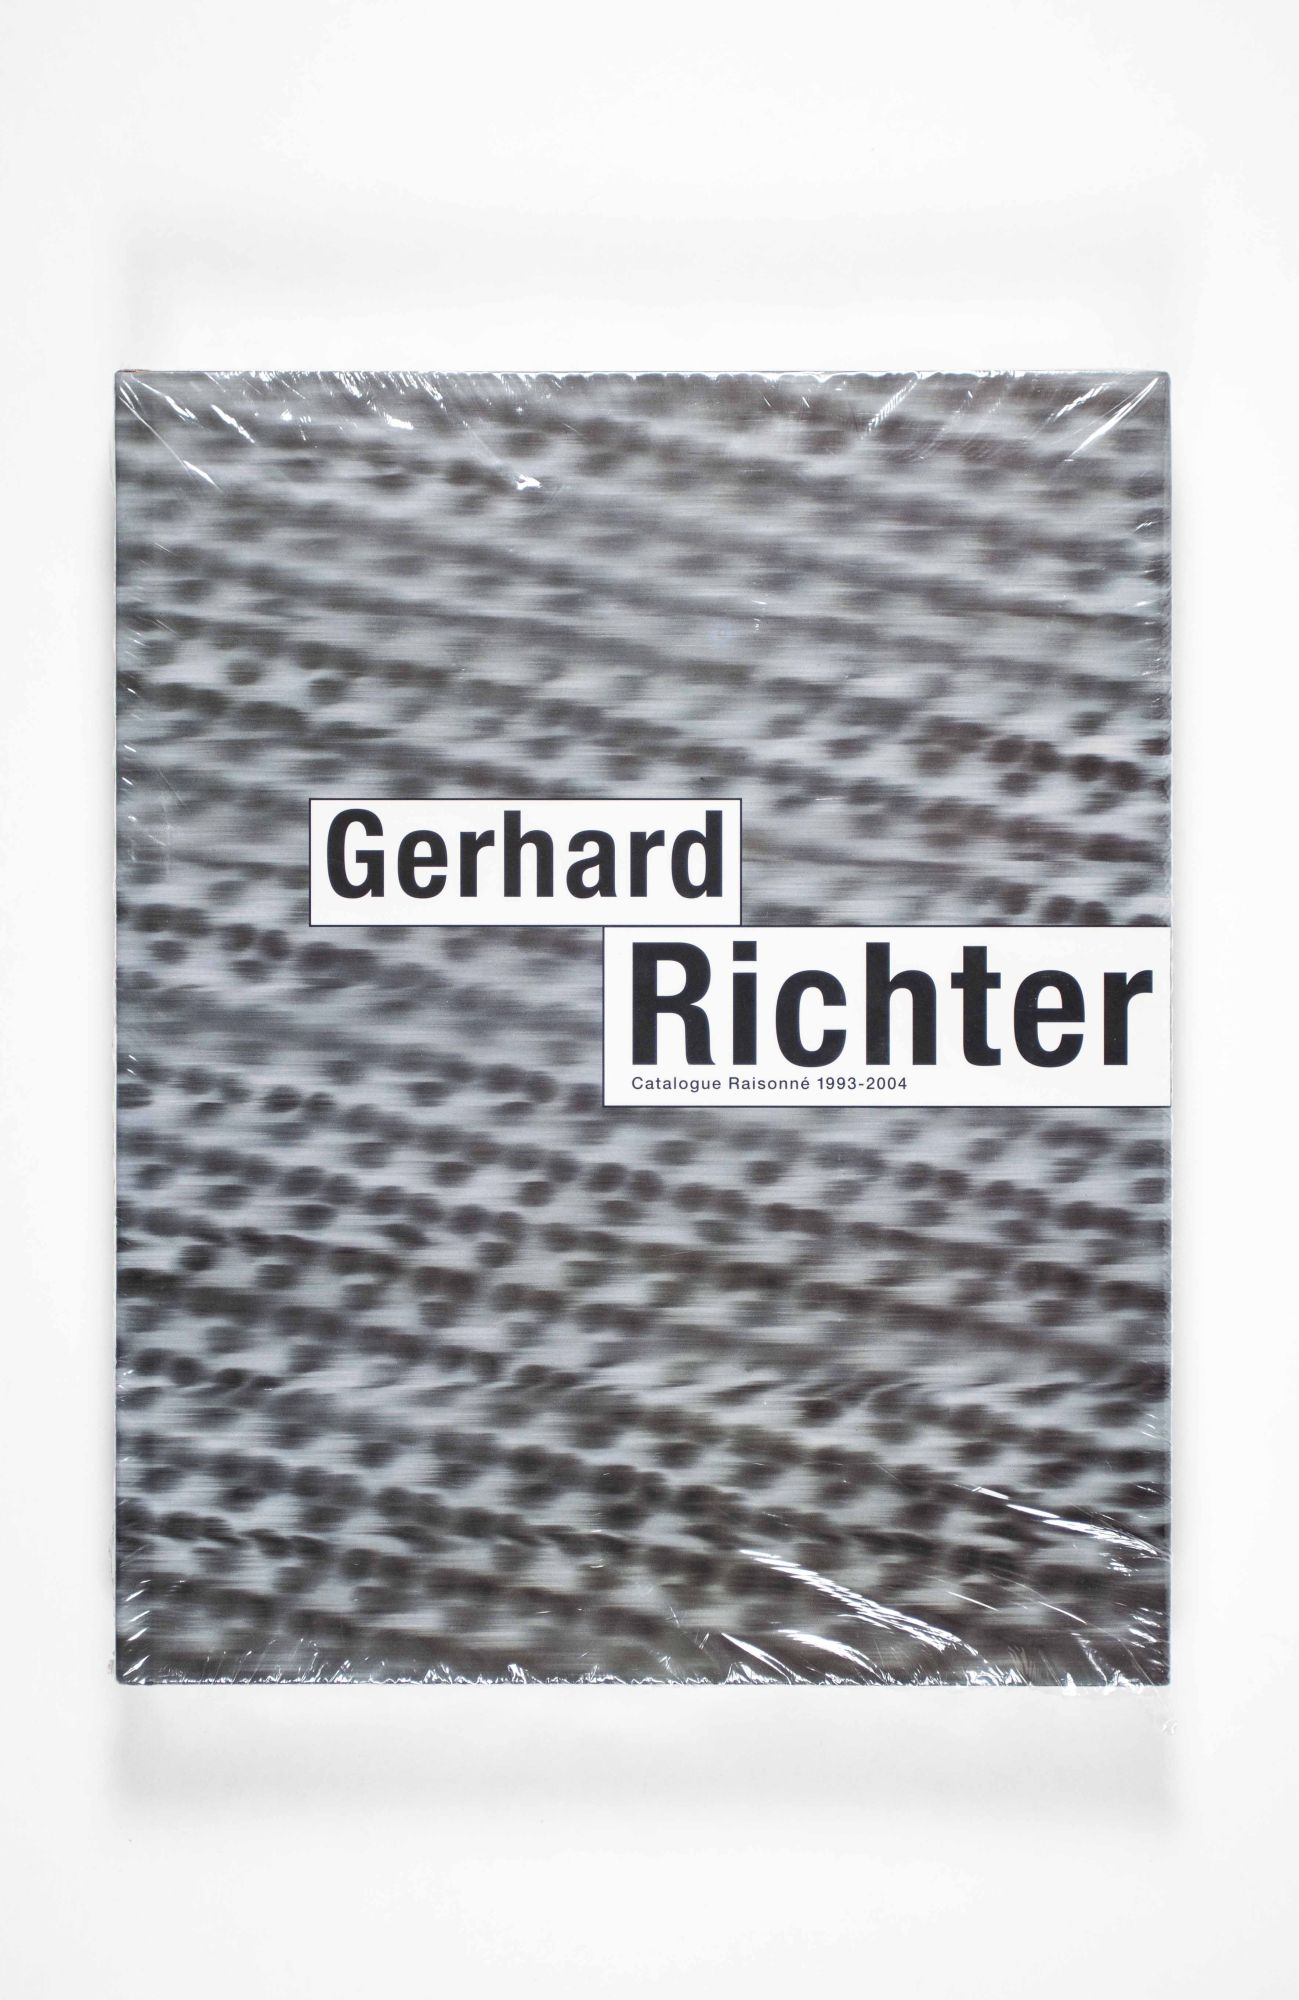 Gerhard Richter Catalogue Raisonne 1993-2004 - Richter, Gerhard; Preface by Armin Zweite and Helmut Friedeel